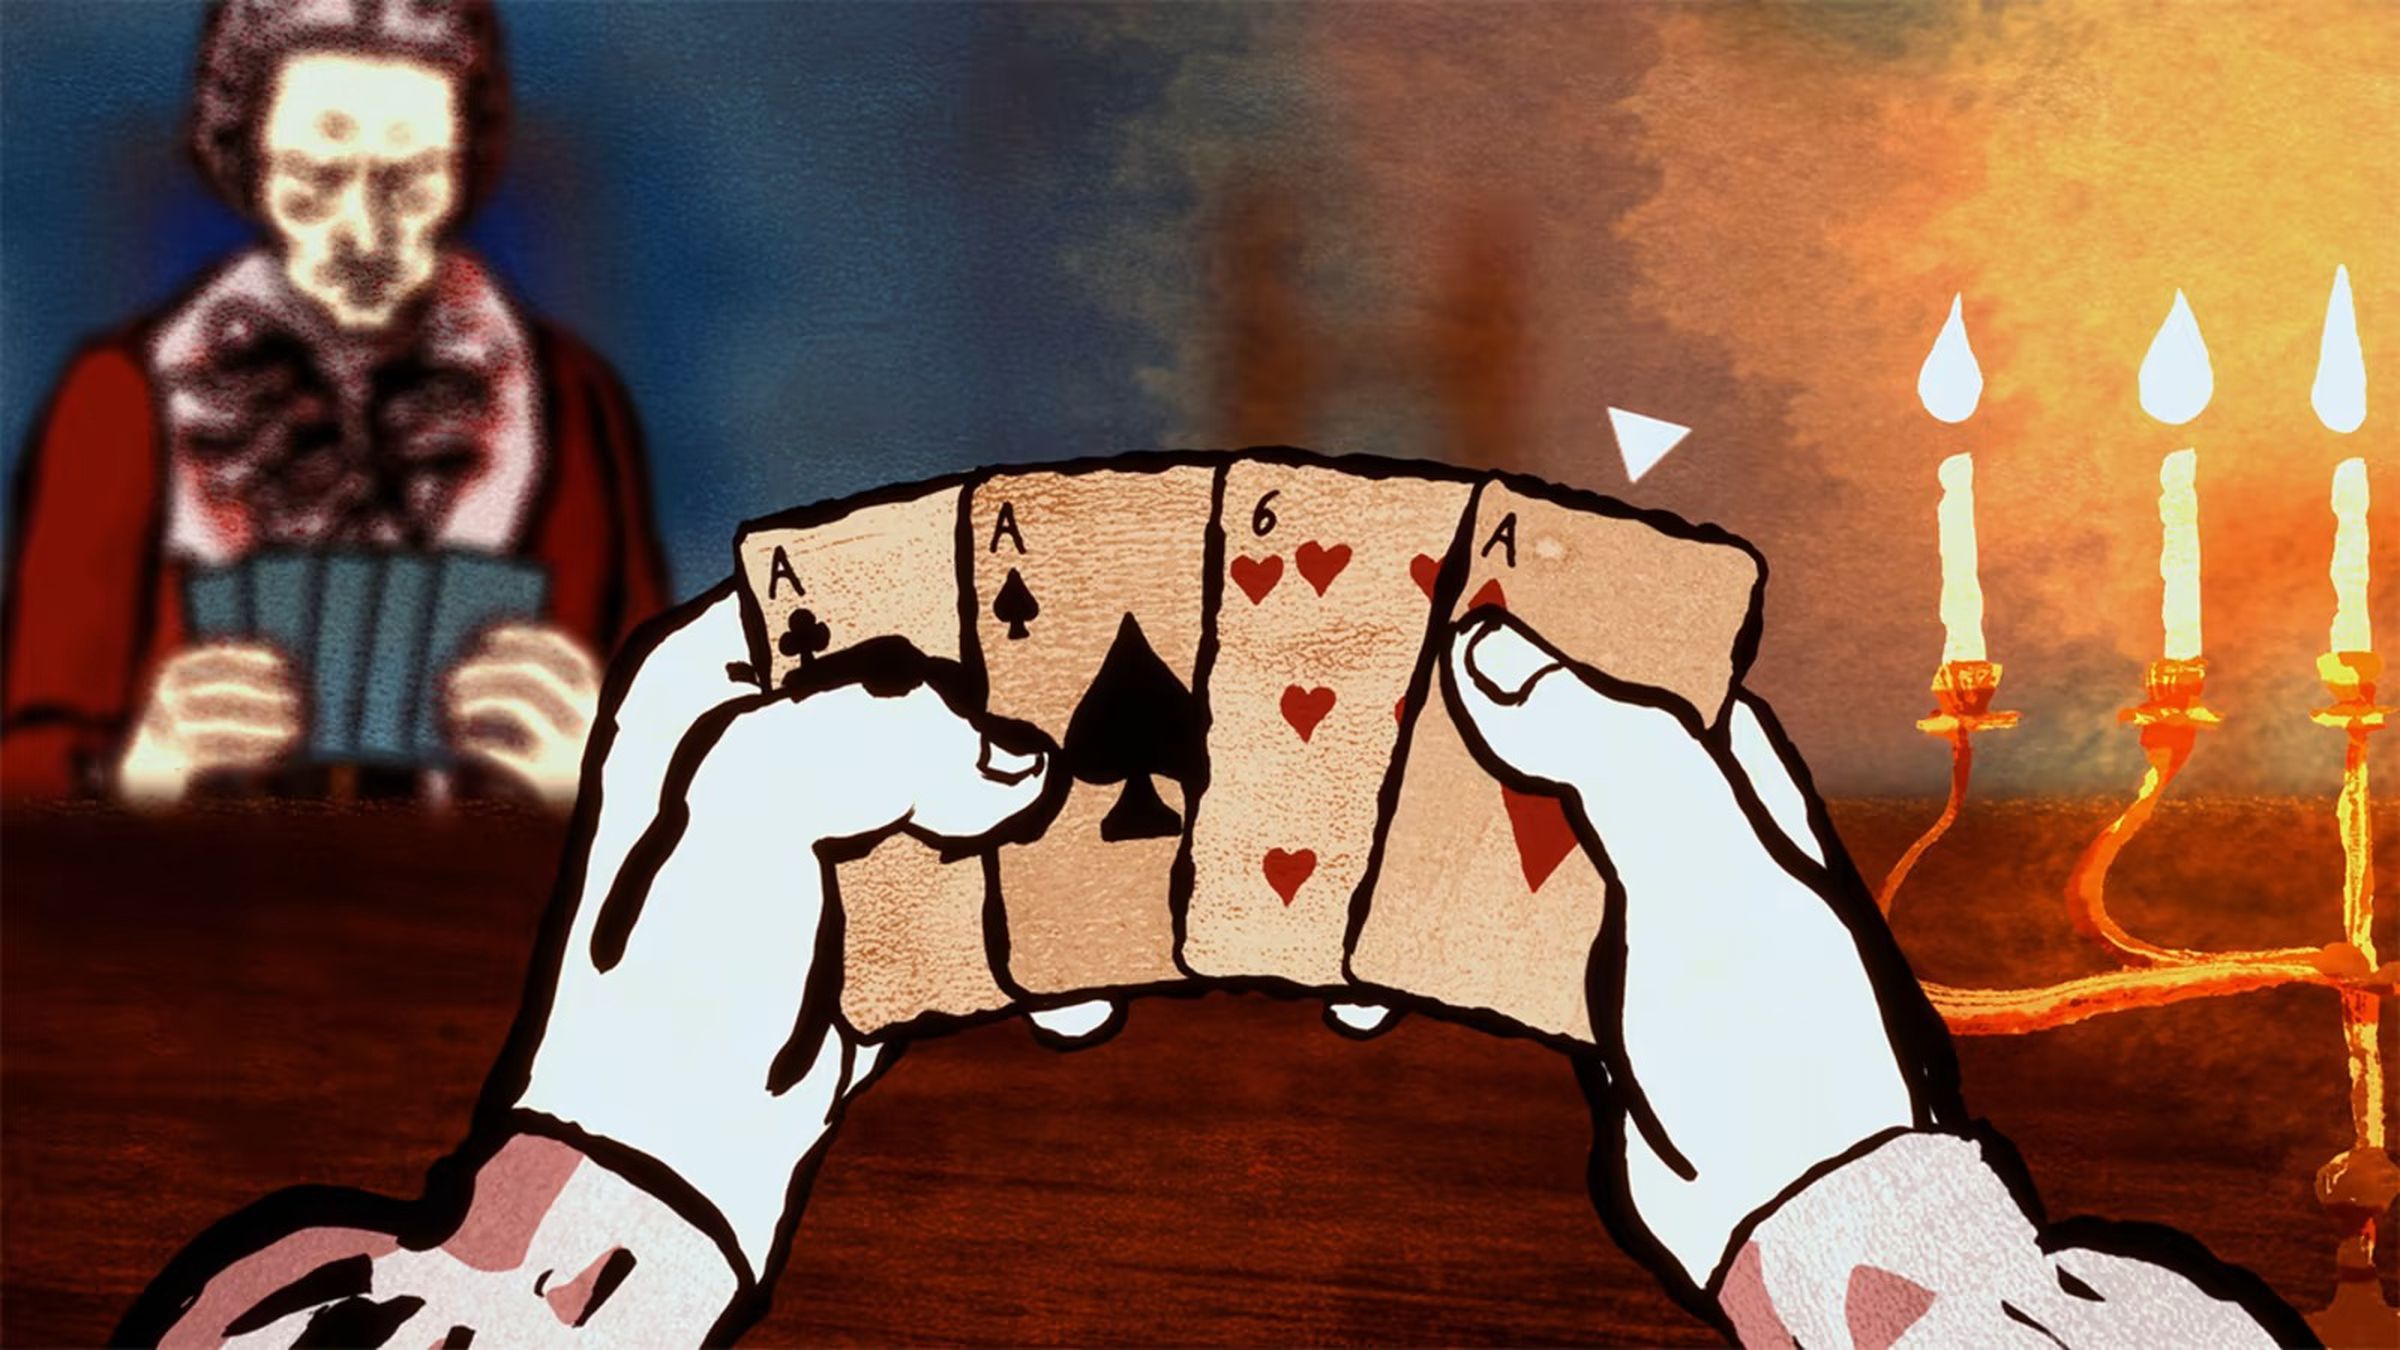 Uma visão em primeira pessoa de quatro cartas - três ases e um seis de copas - com um homem do outro lado da mesa.